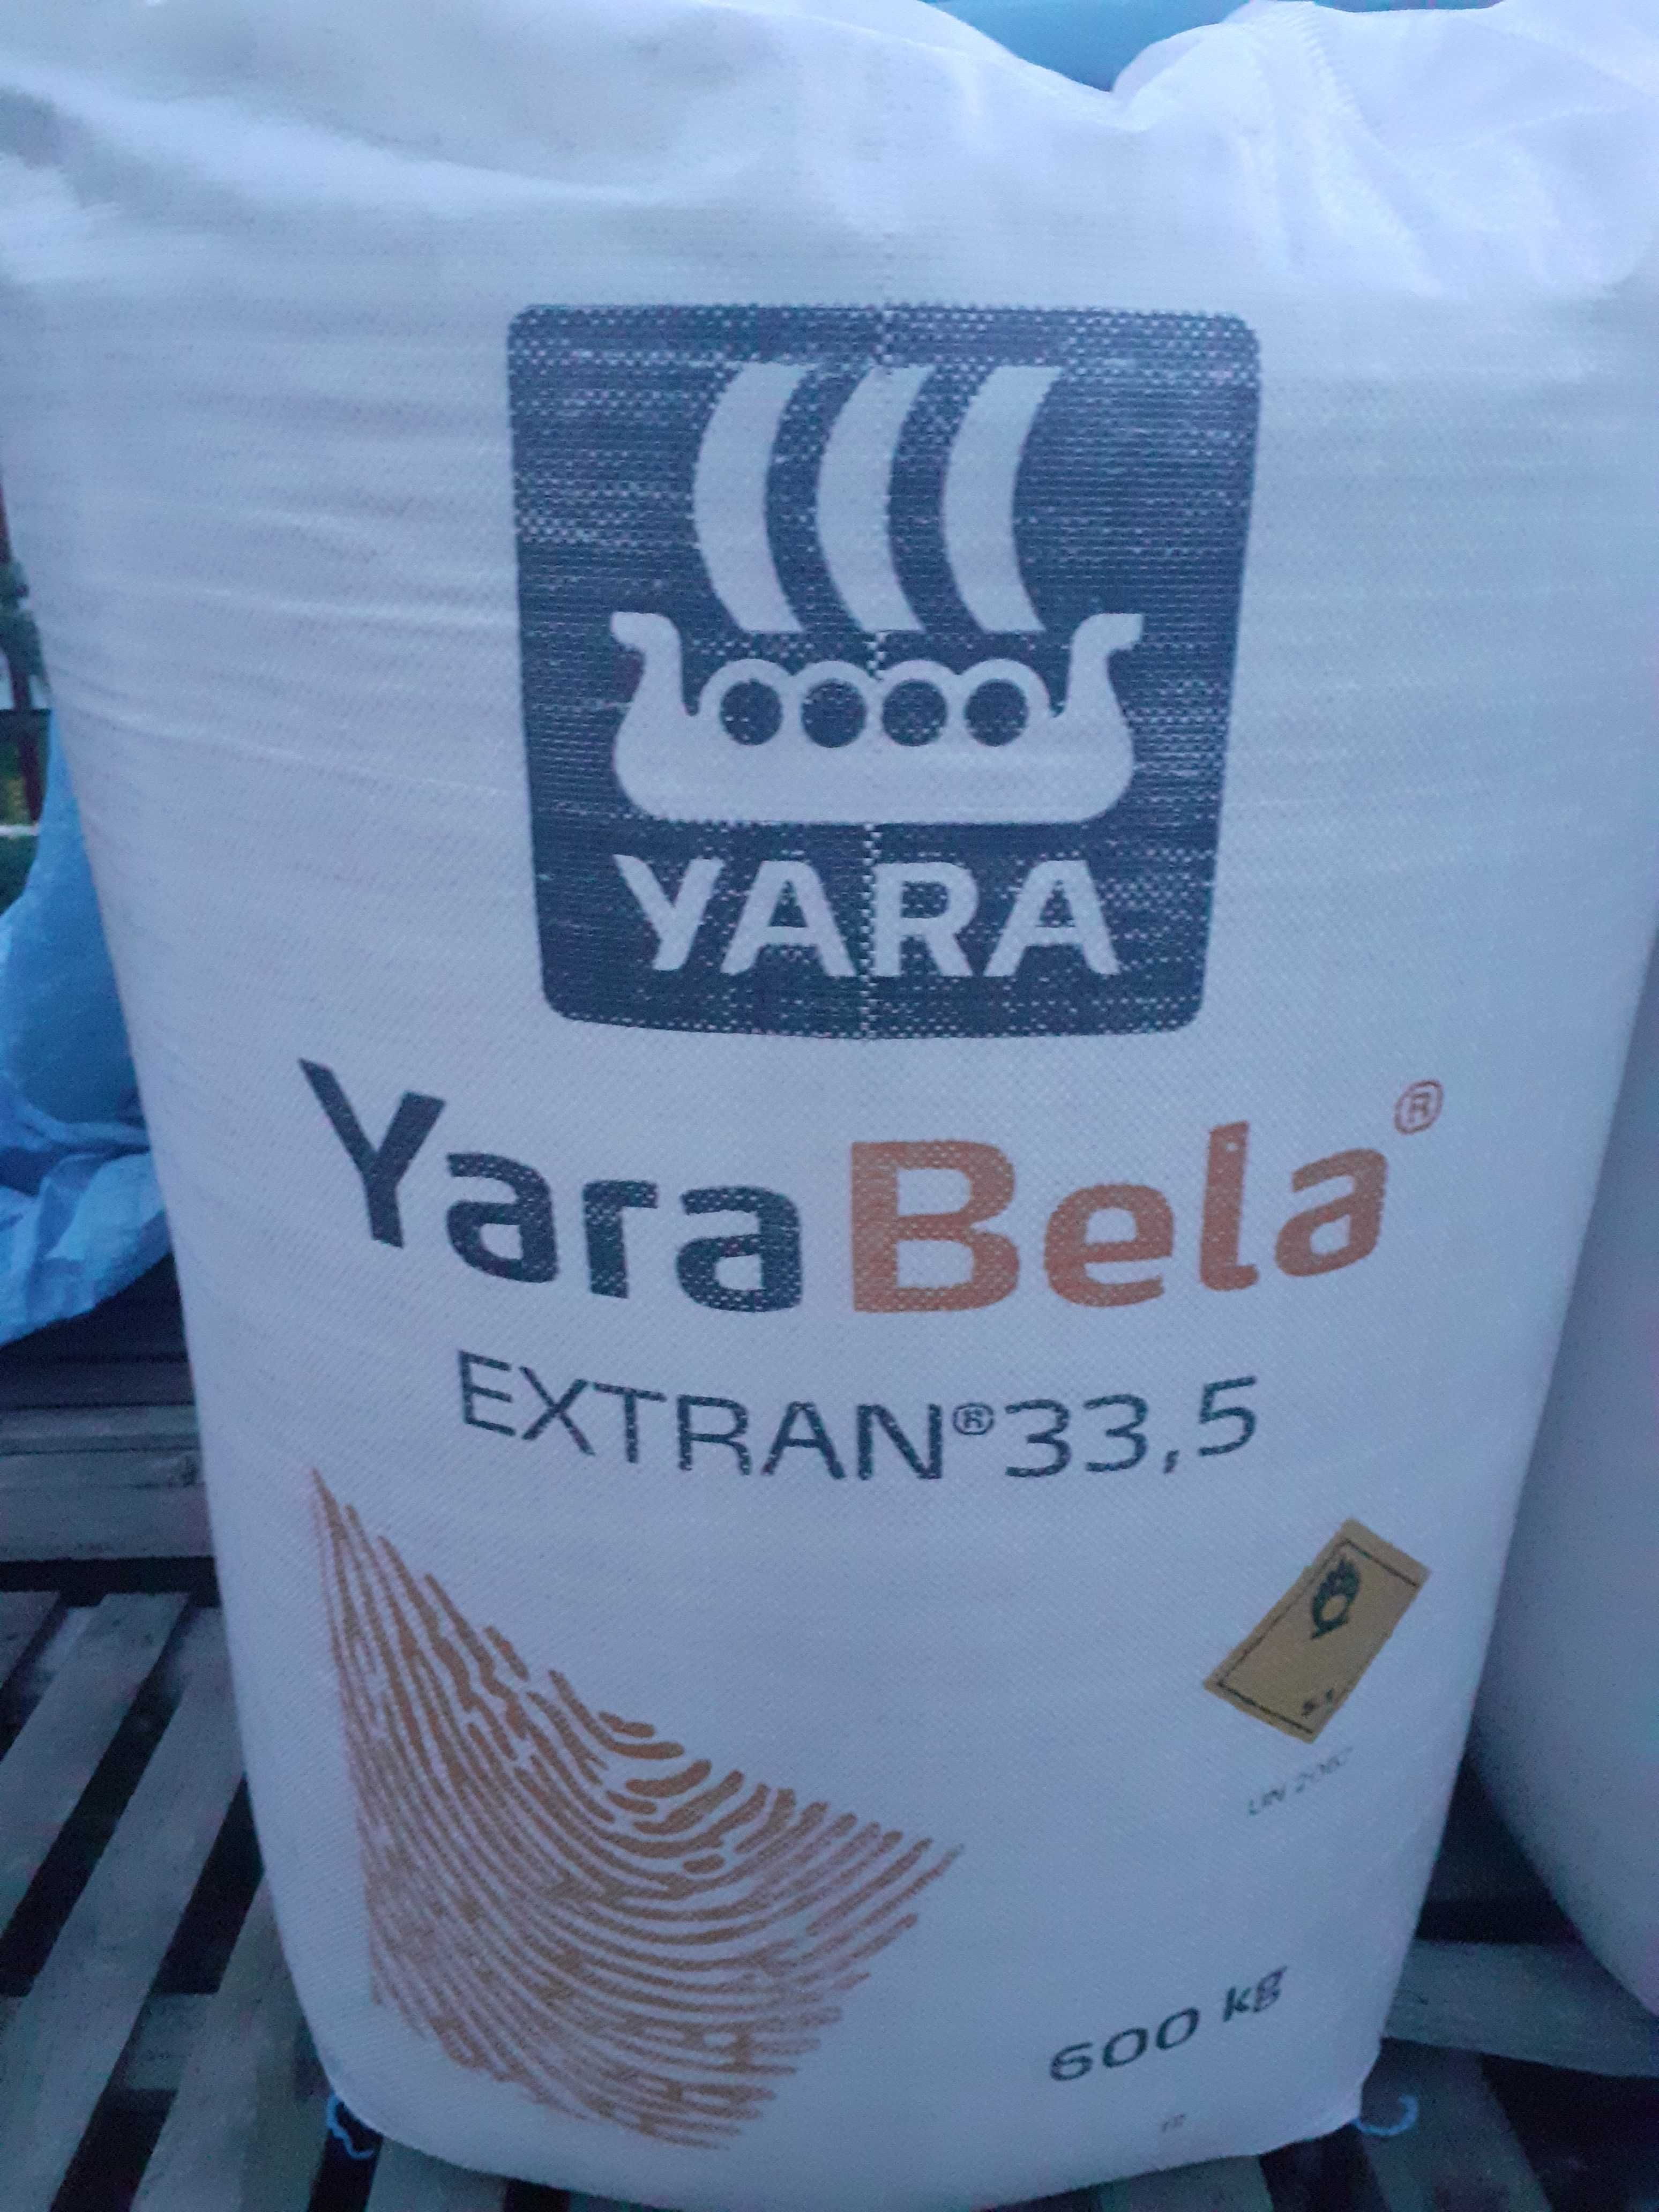 Yara Bela Nitromag 27 % N (Saletra wapniowo-amonowa ) worek 750 kg BB